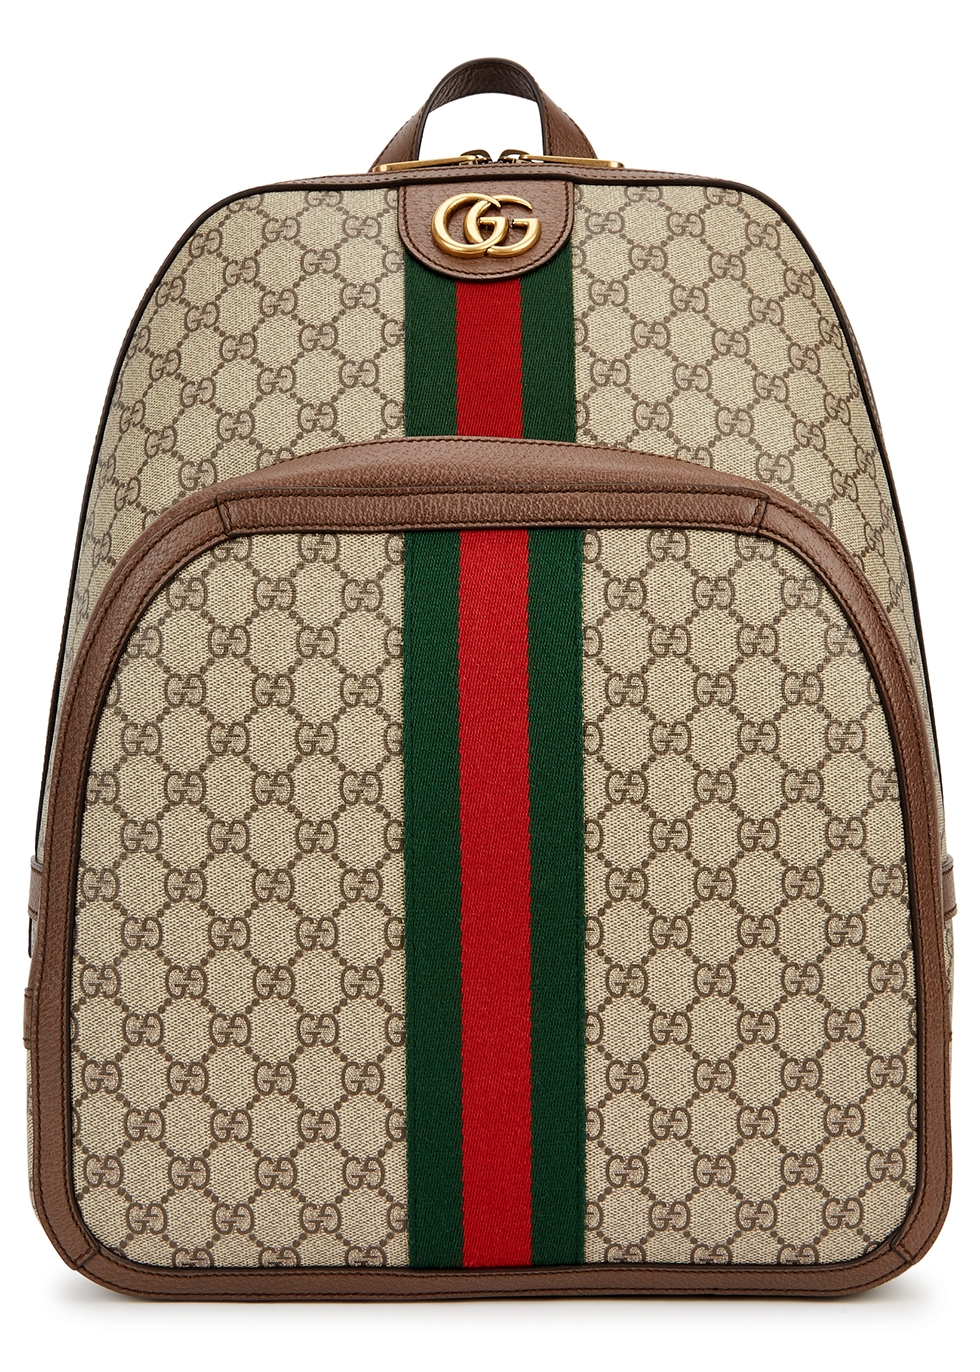 Gg Backpack | Shop www.spora.ws